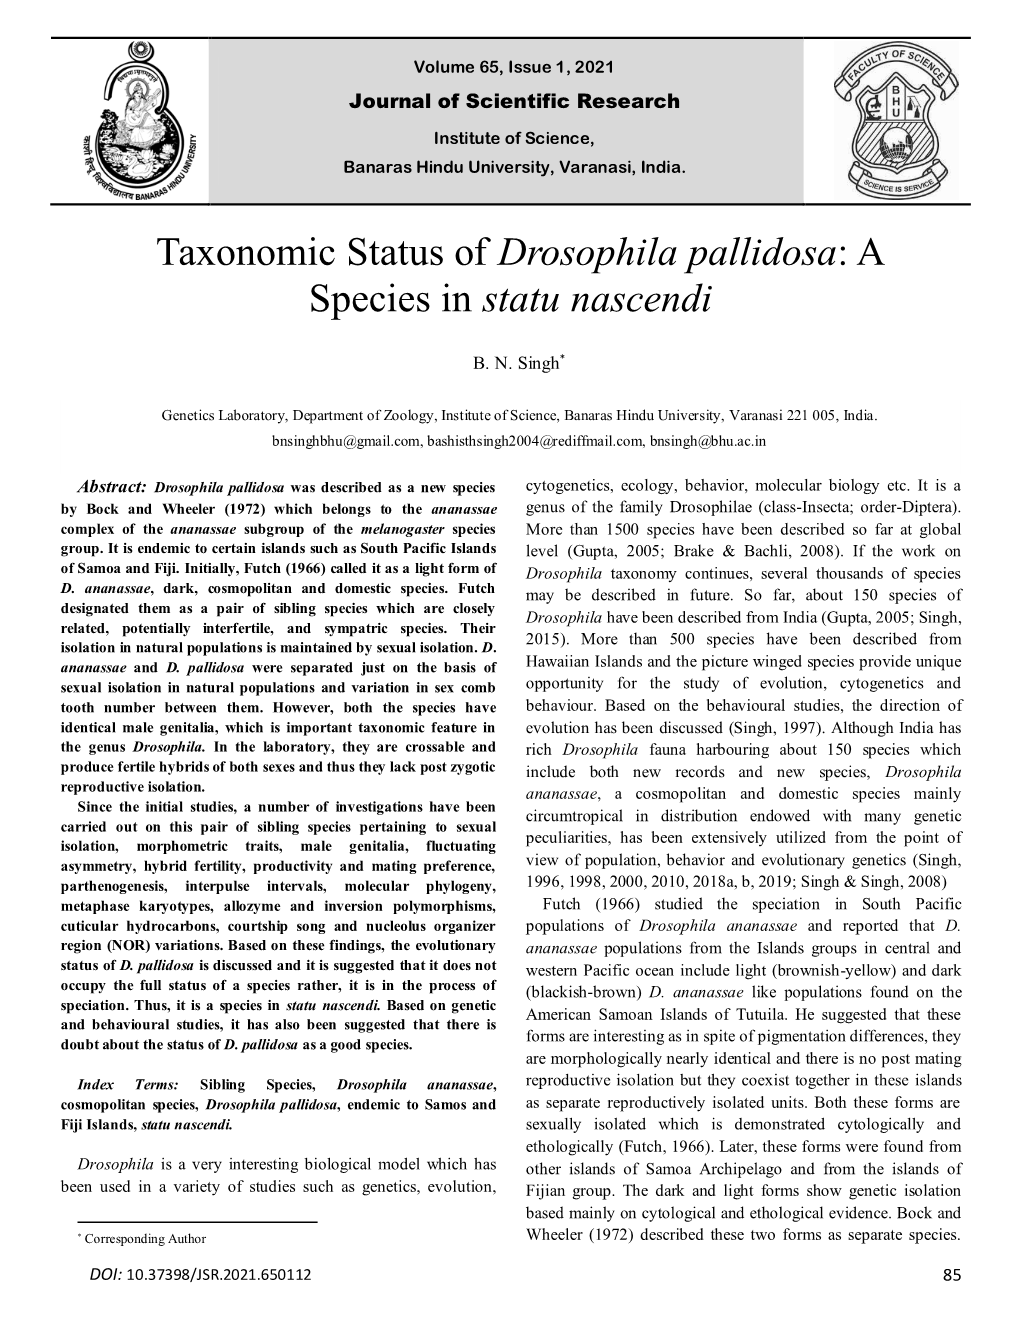 Taxonomic Status of Drosophila Pallidosa: a Species in Statu Nascendi